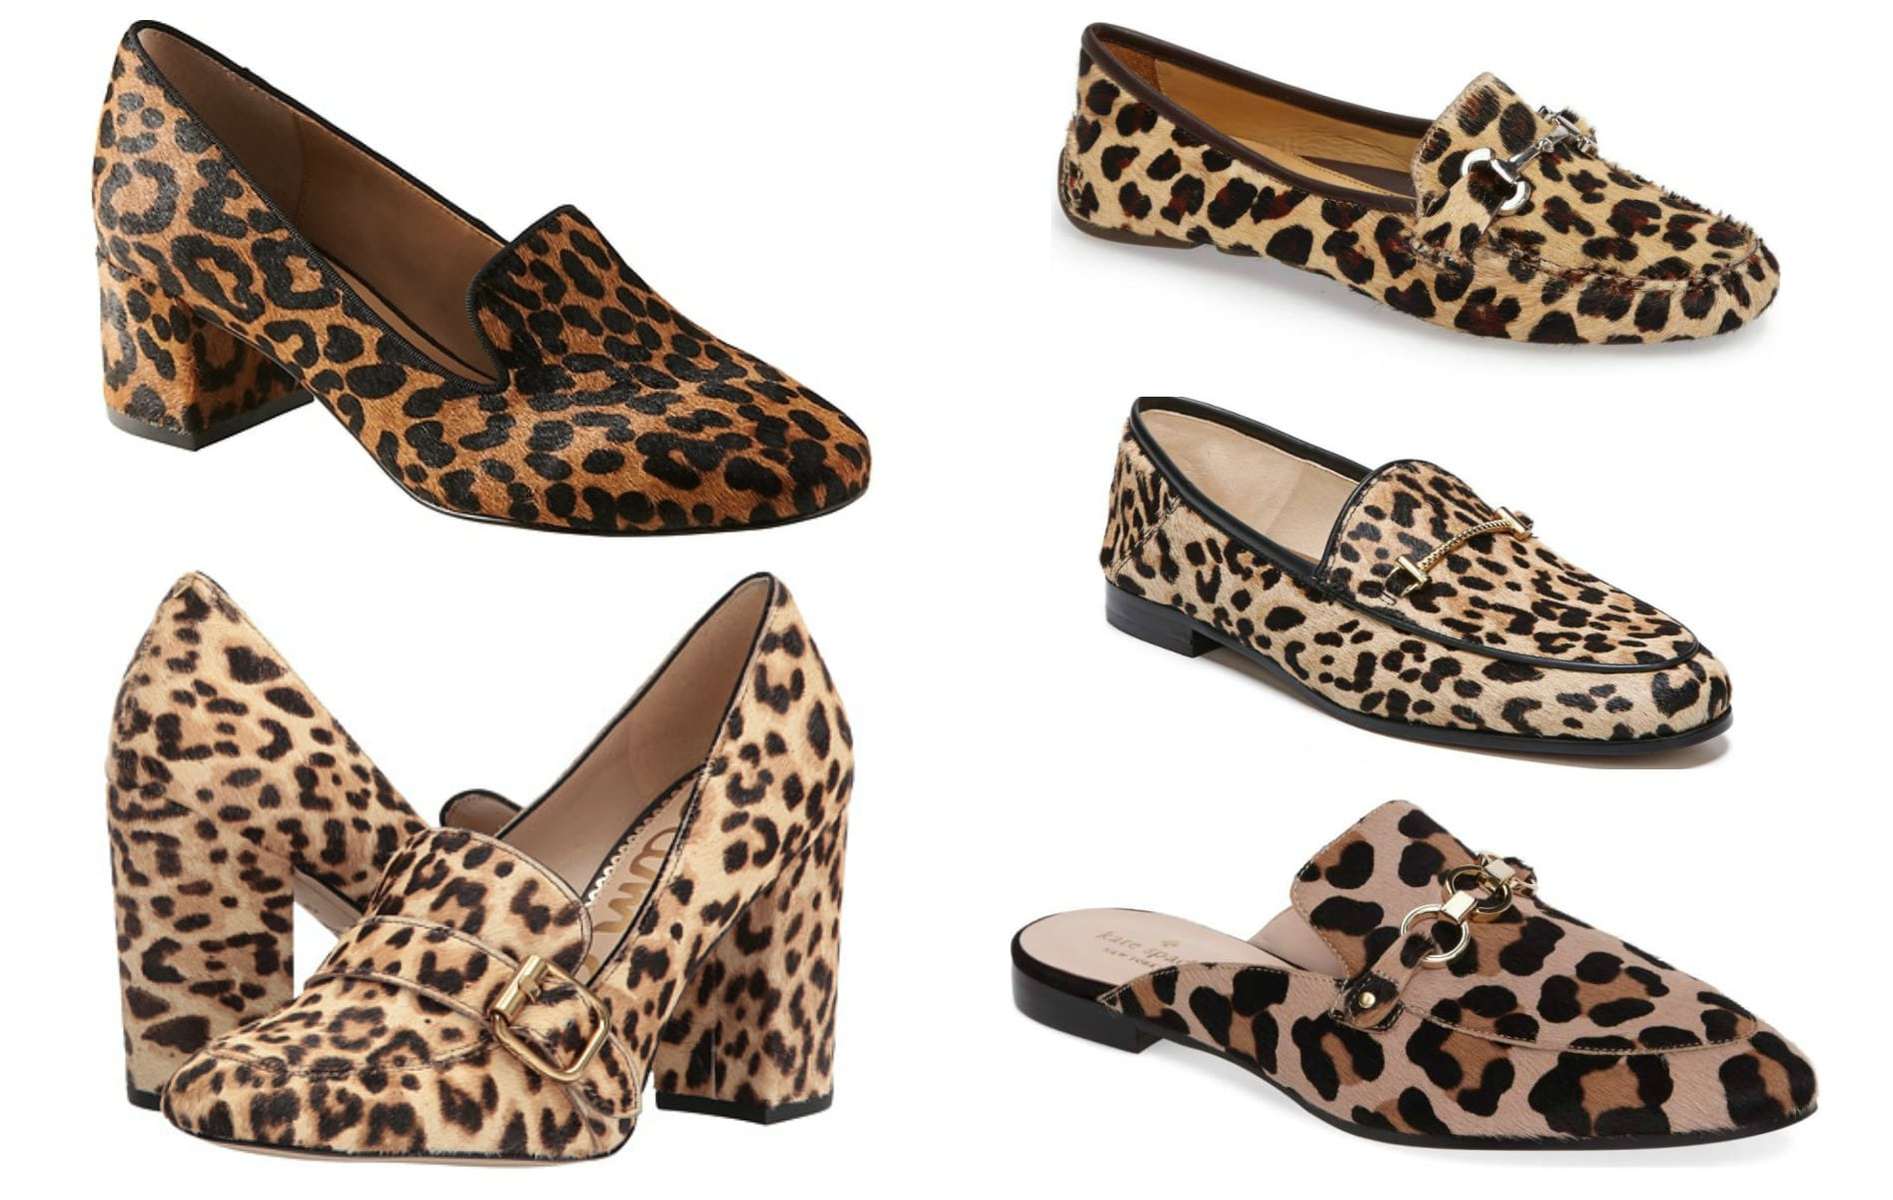 leopard spot shoes